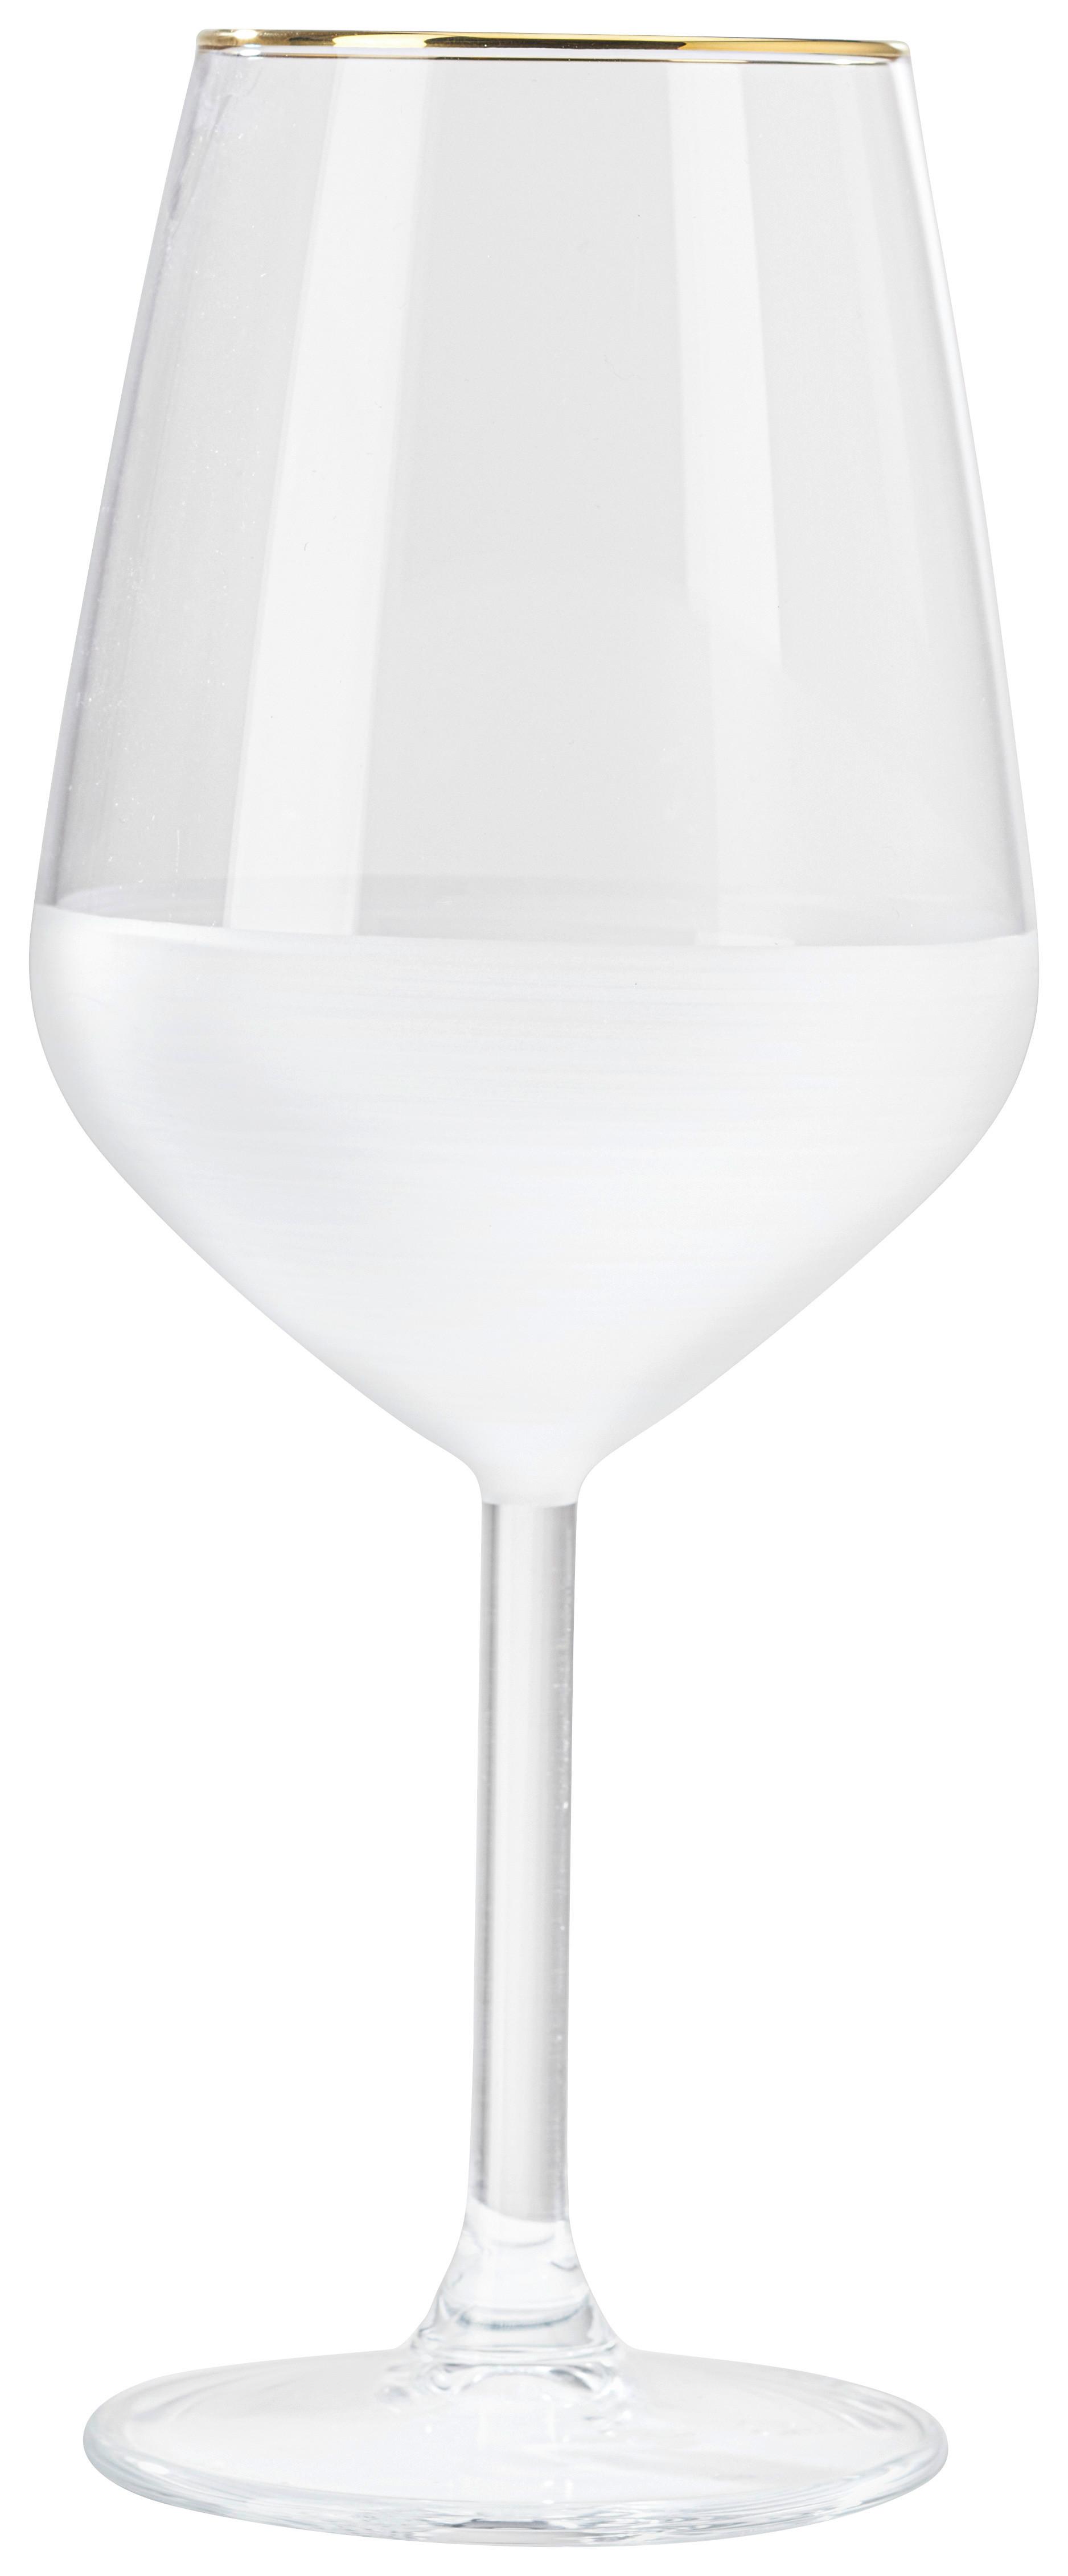 Weinglas Goldline in Weiss ca. 490ml - Weiss, Modern, Glas (6,4/22cm) - Premium Living